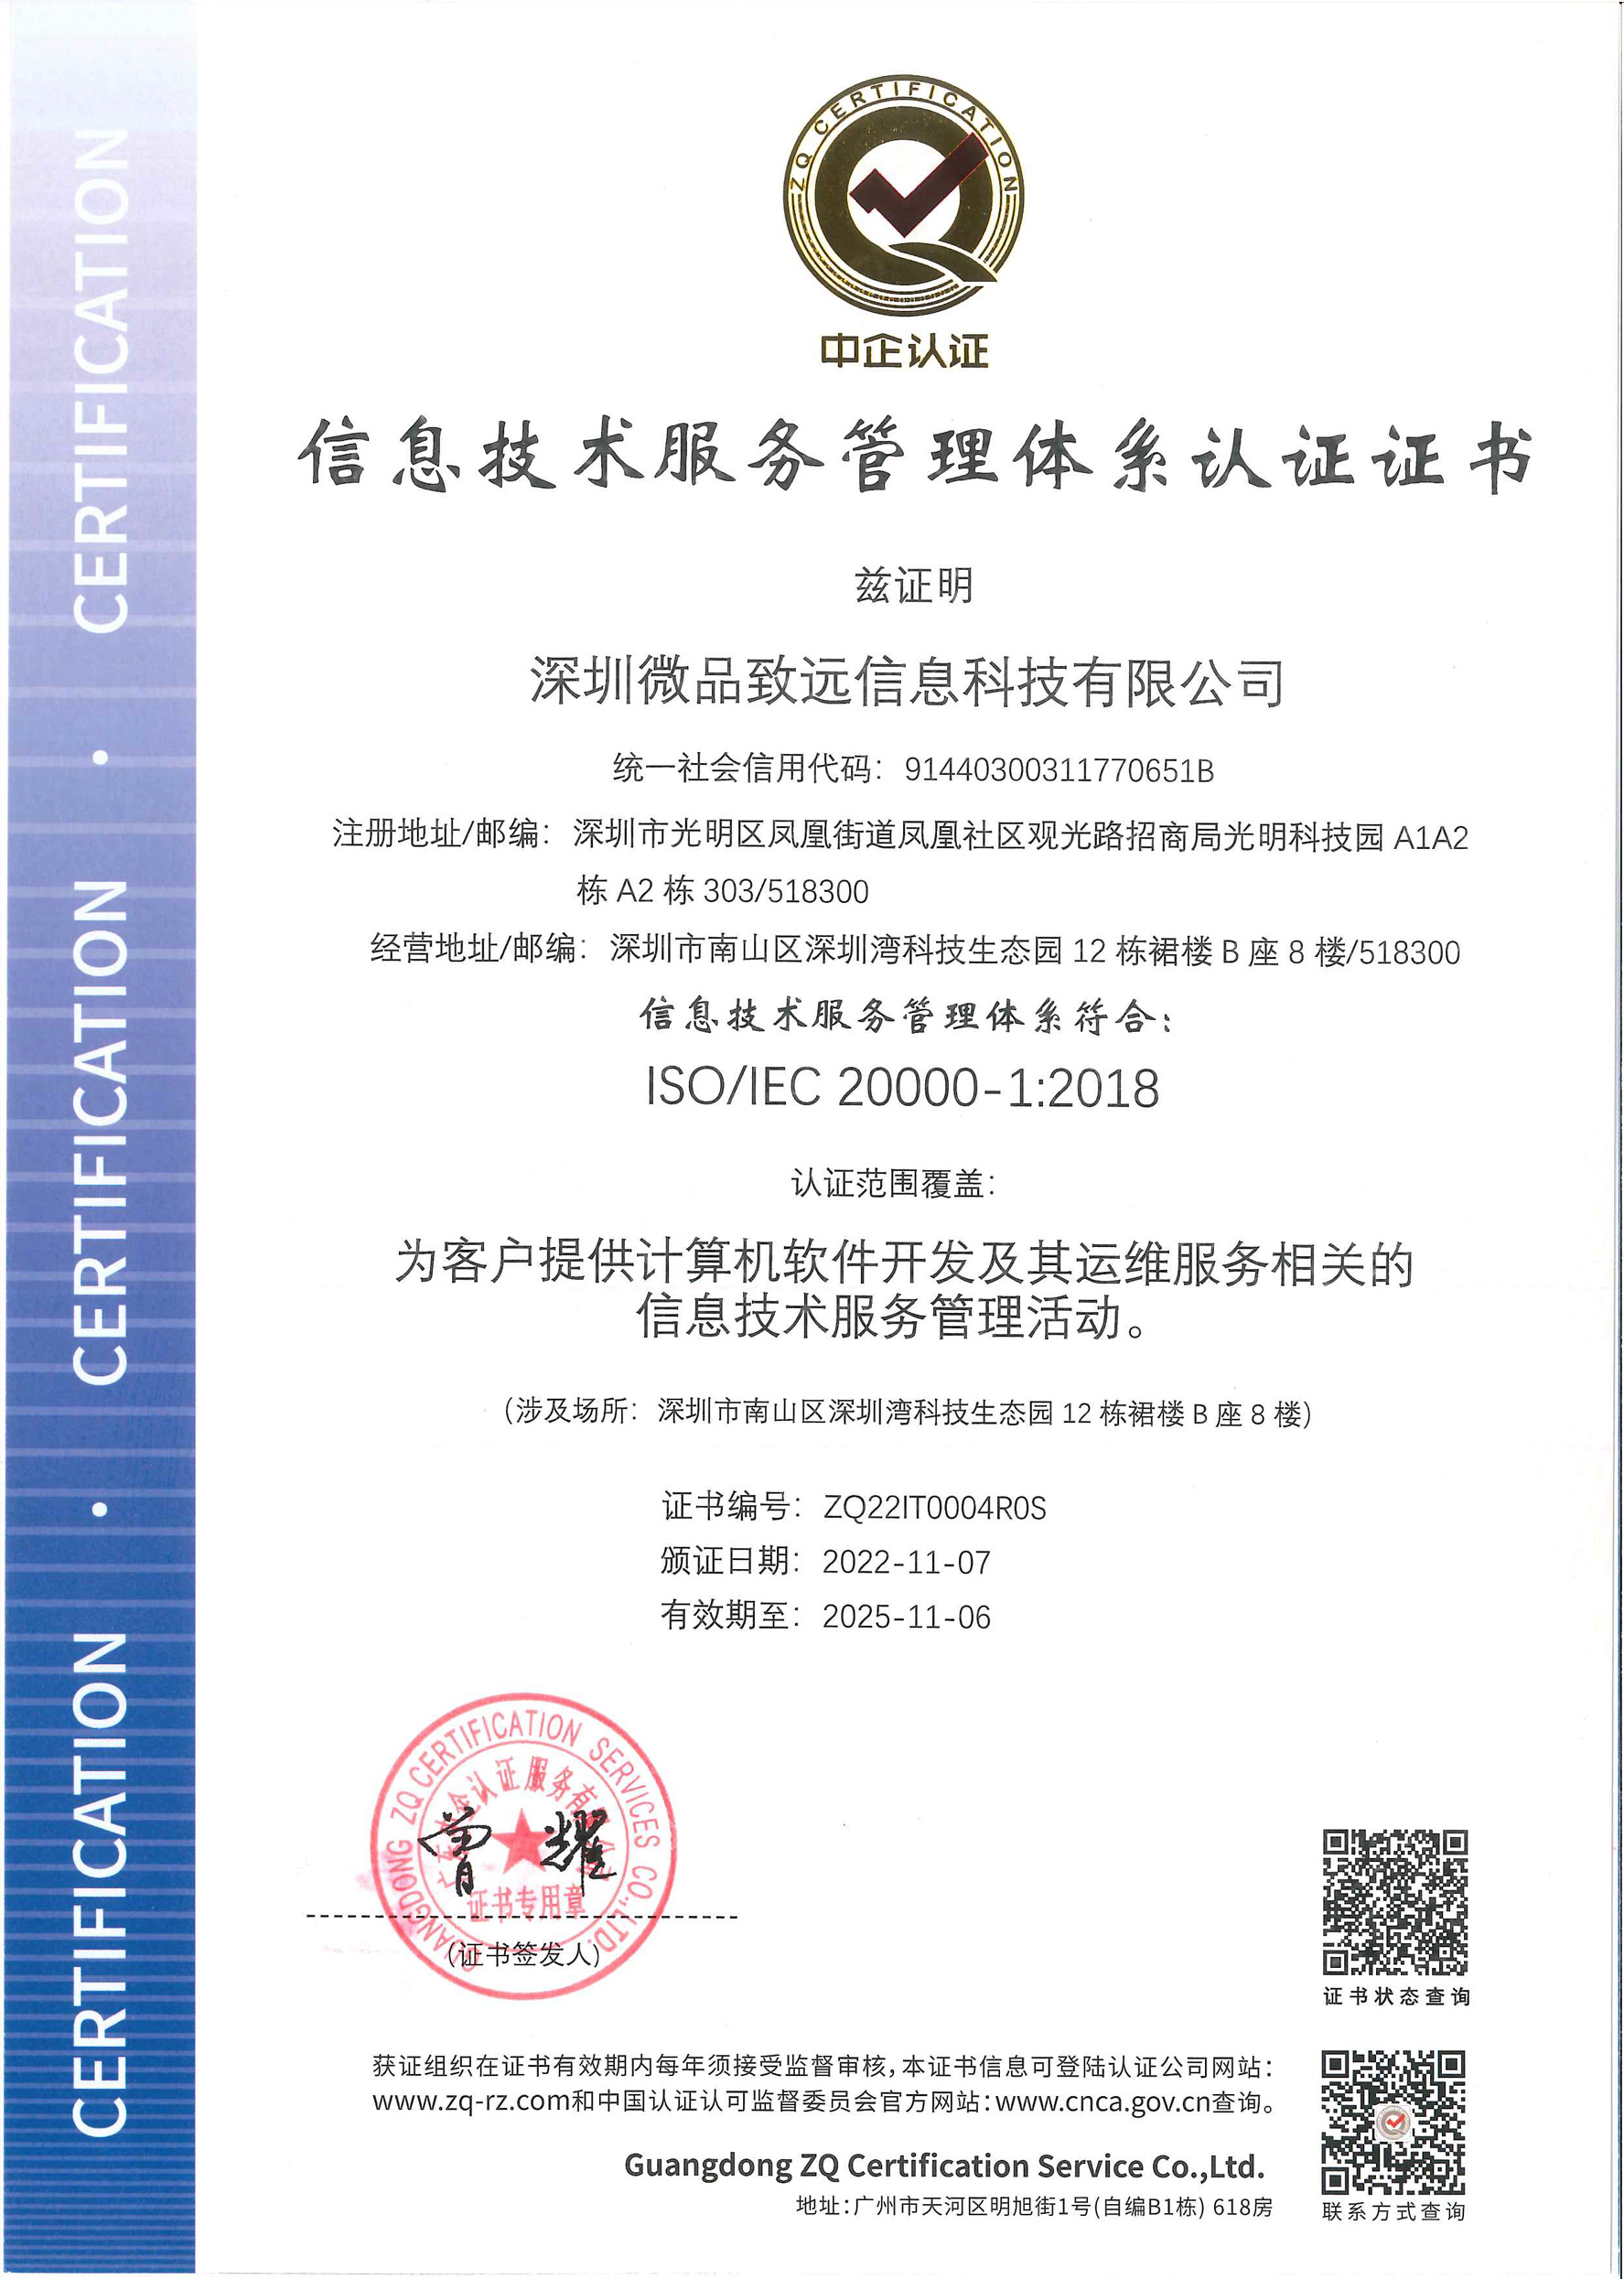 深圳微品致远信息科技有限公司-ITSMS证书 为客户提供计算机软件开发及其运维服务